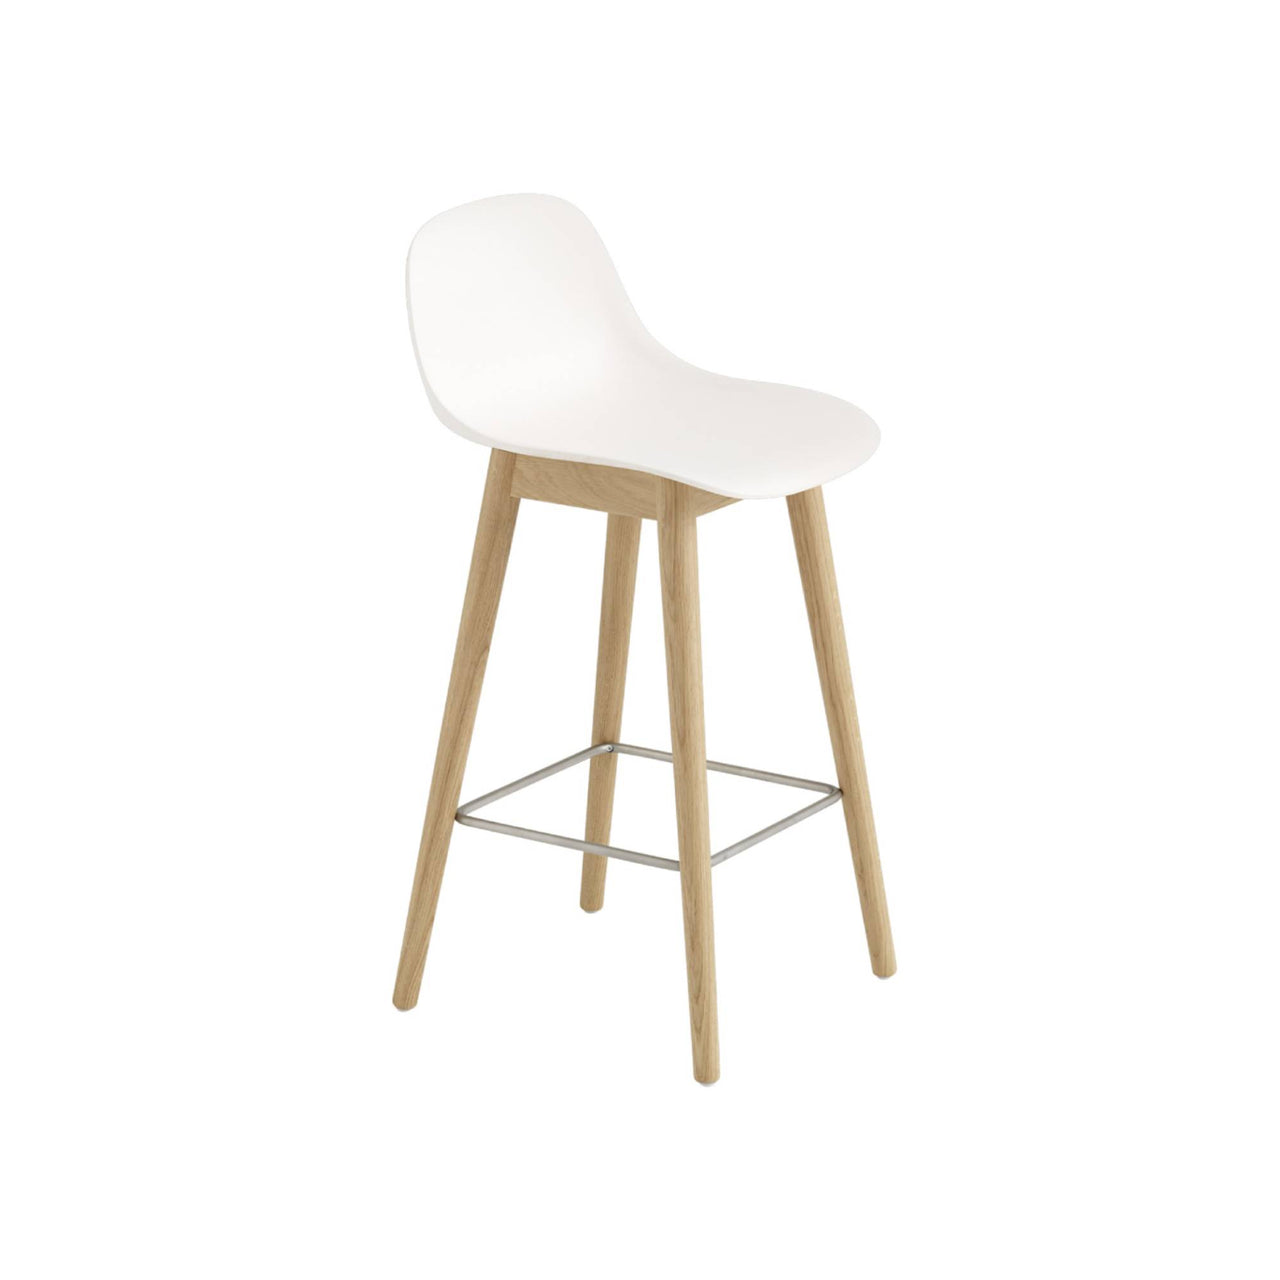 Fiber Bar + Counter Stool With Backrest: Wood Base + Bar + Natural White + Oak